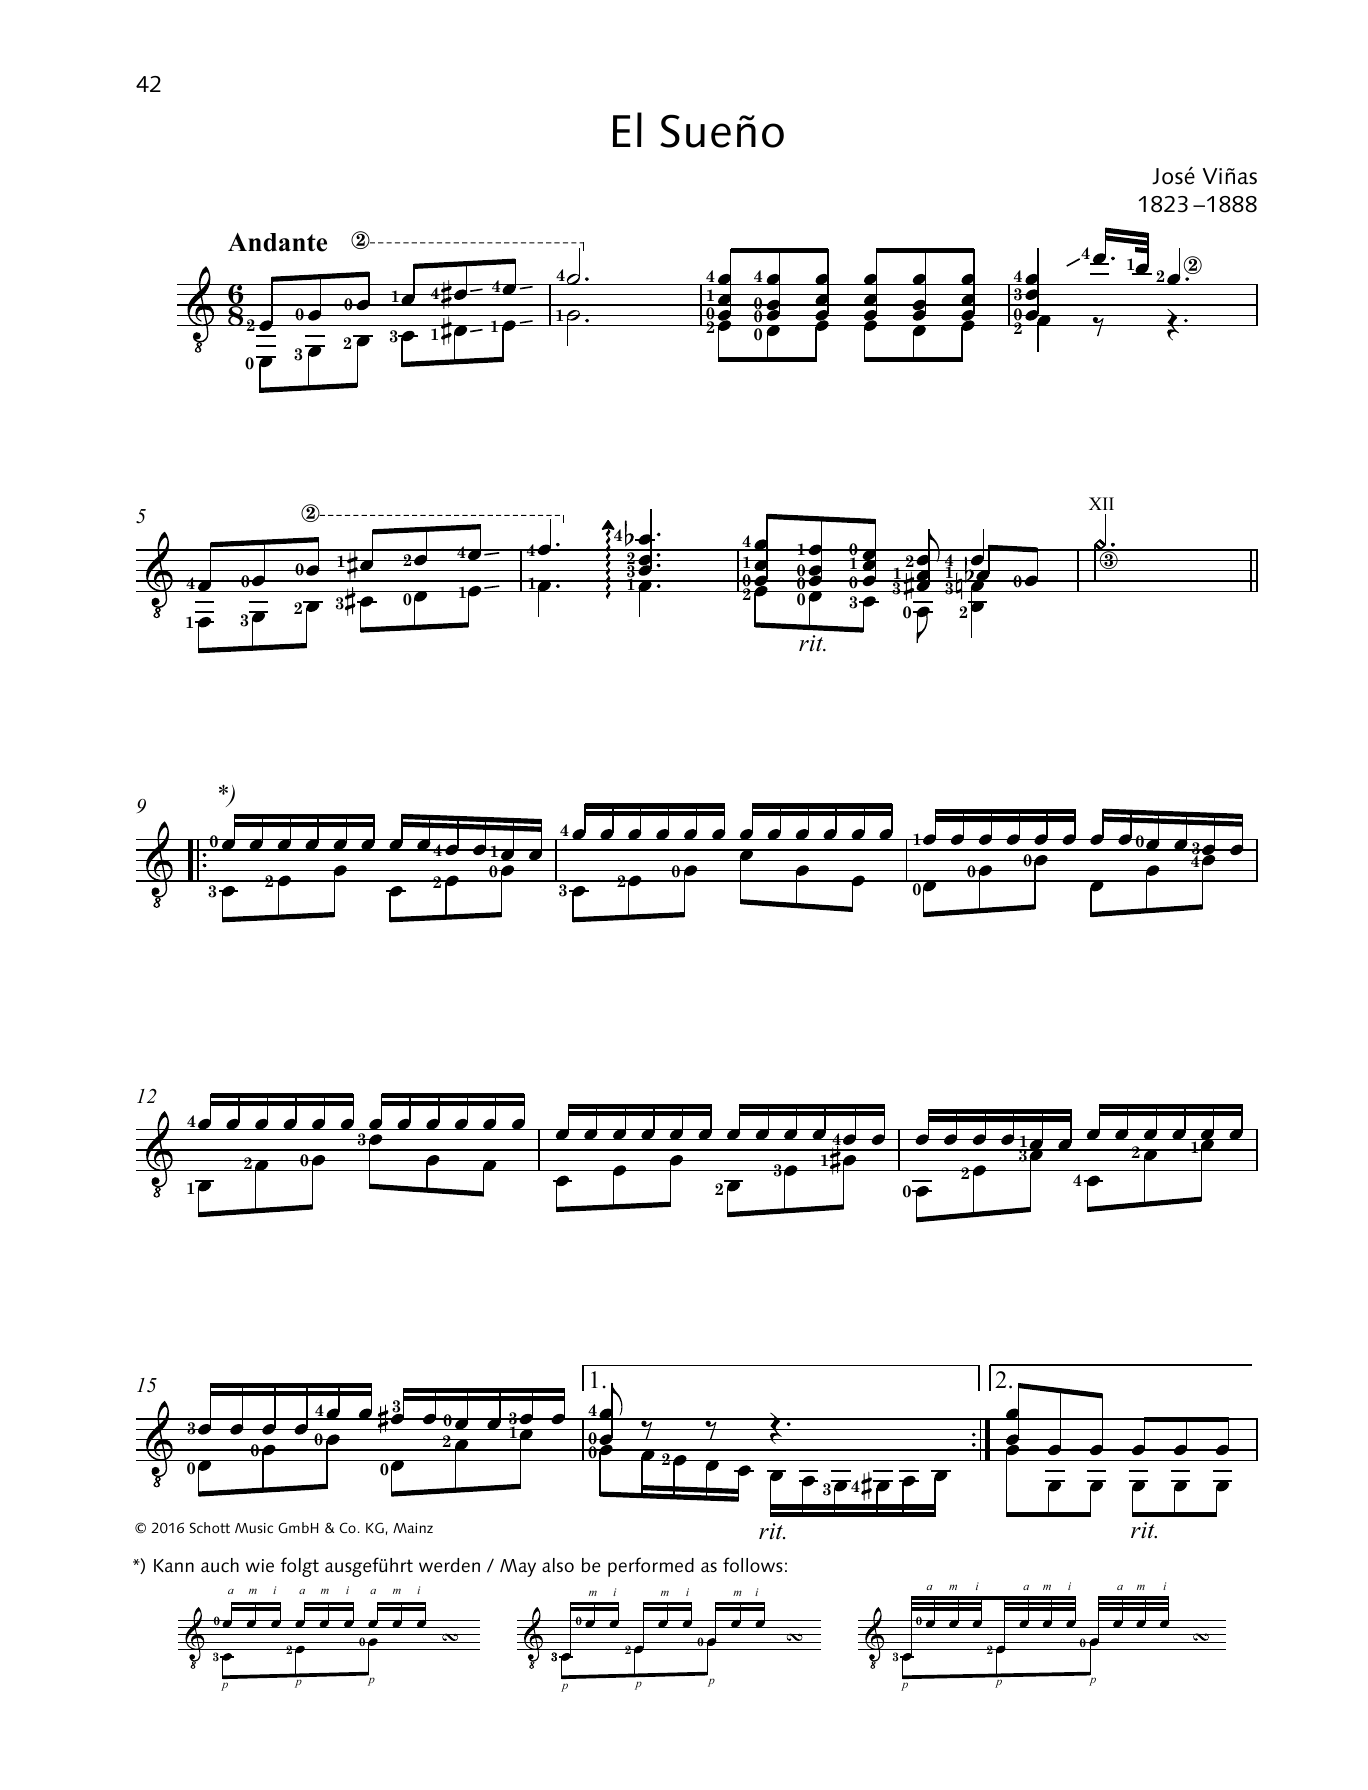 José Viñas El Sueño Sheet Music Notes & Chords for Solo Guitar - Download or Print PDF